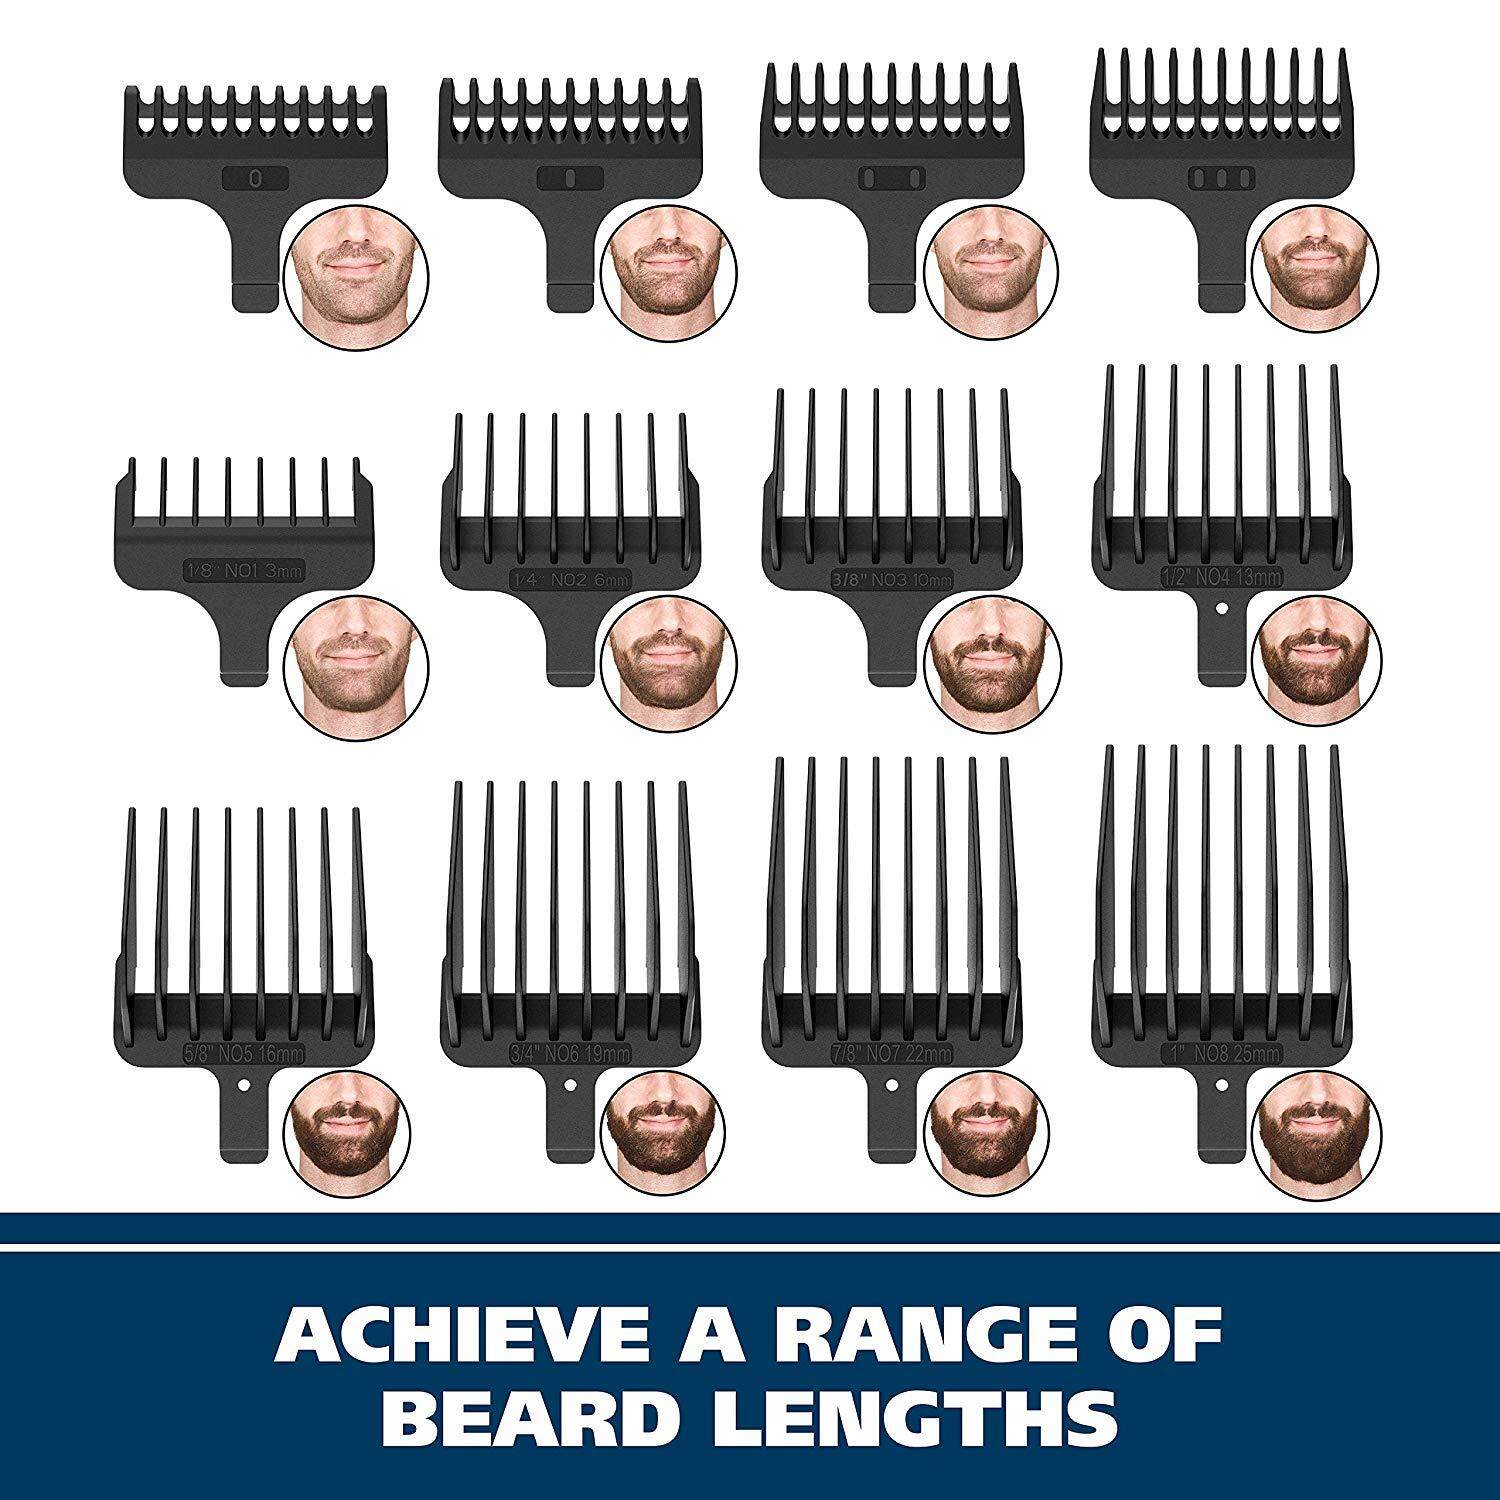 ADANTI Hair Clippers for Men, Hair Trimmer Professional Hair Clipper Cordless Barber Hair Cutting Machine Digital Display Haircut Trimmer for Men (Col